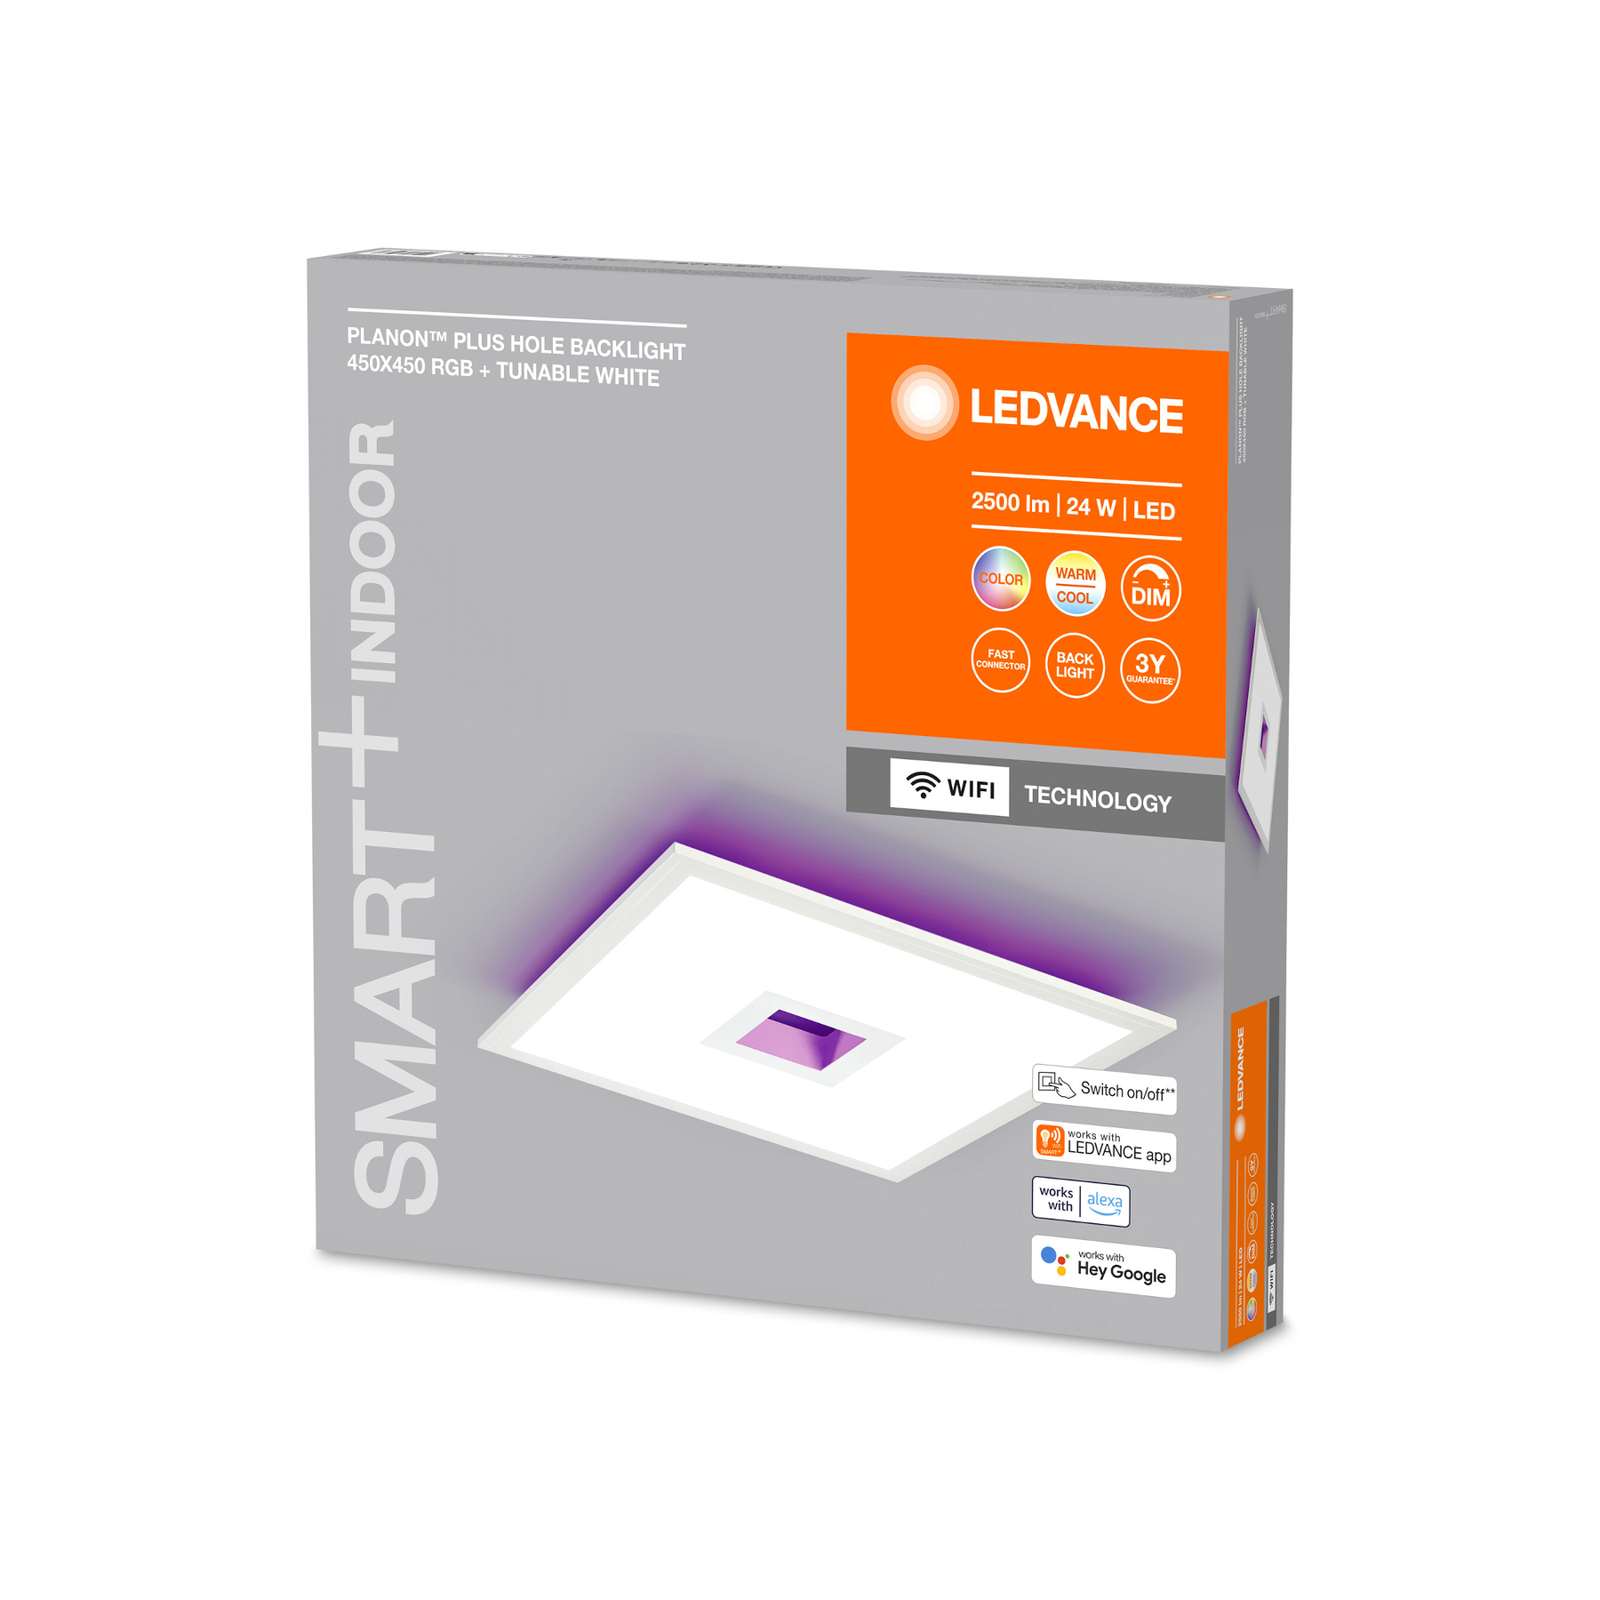 LEDVANCE SMART+ WiFi Planon Plus Hole 45x45cm blanc